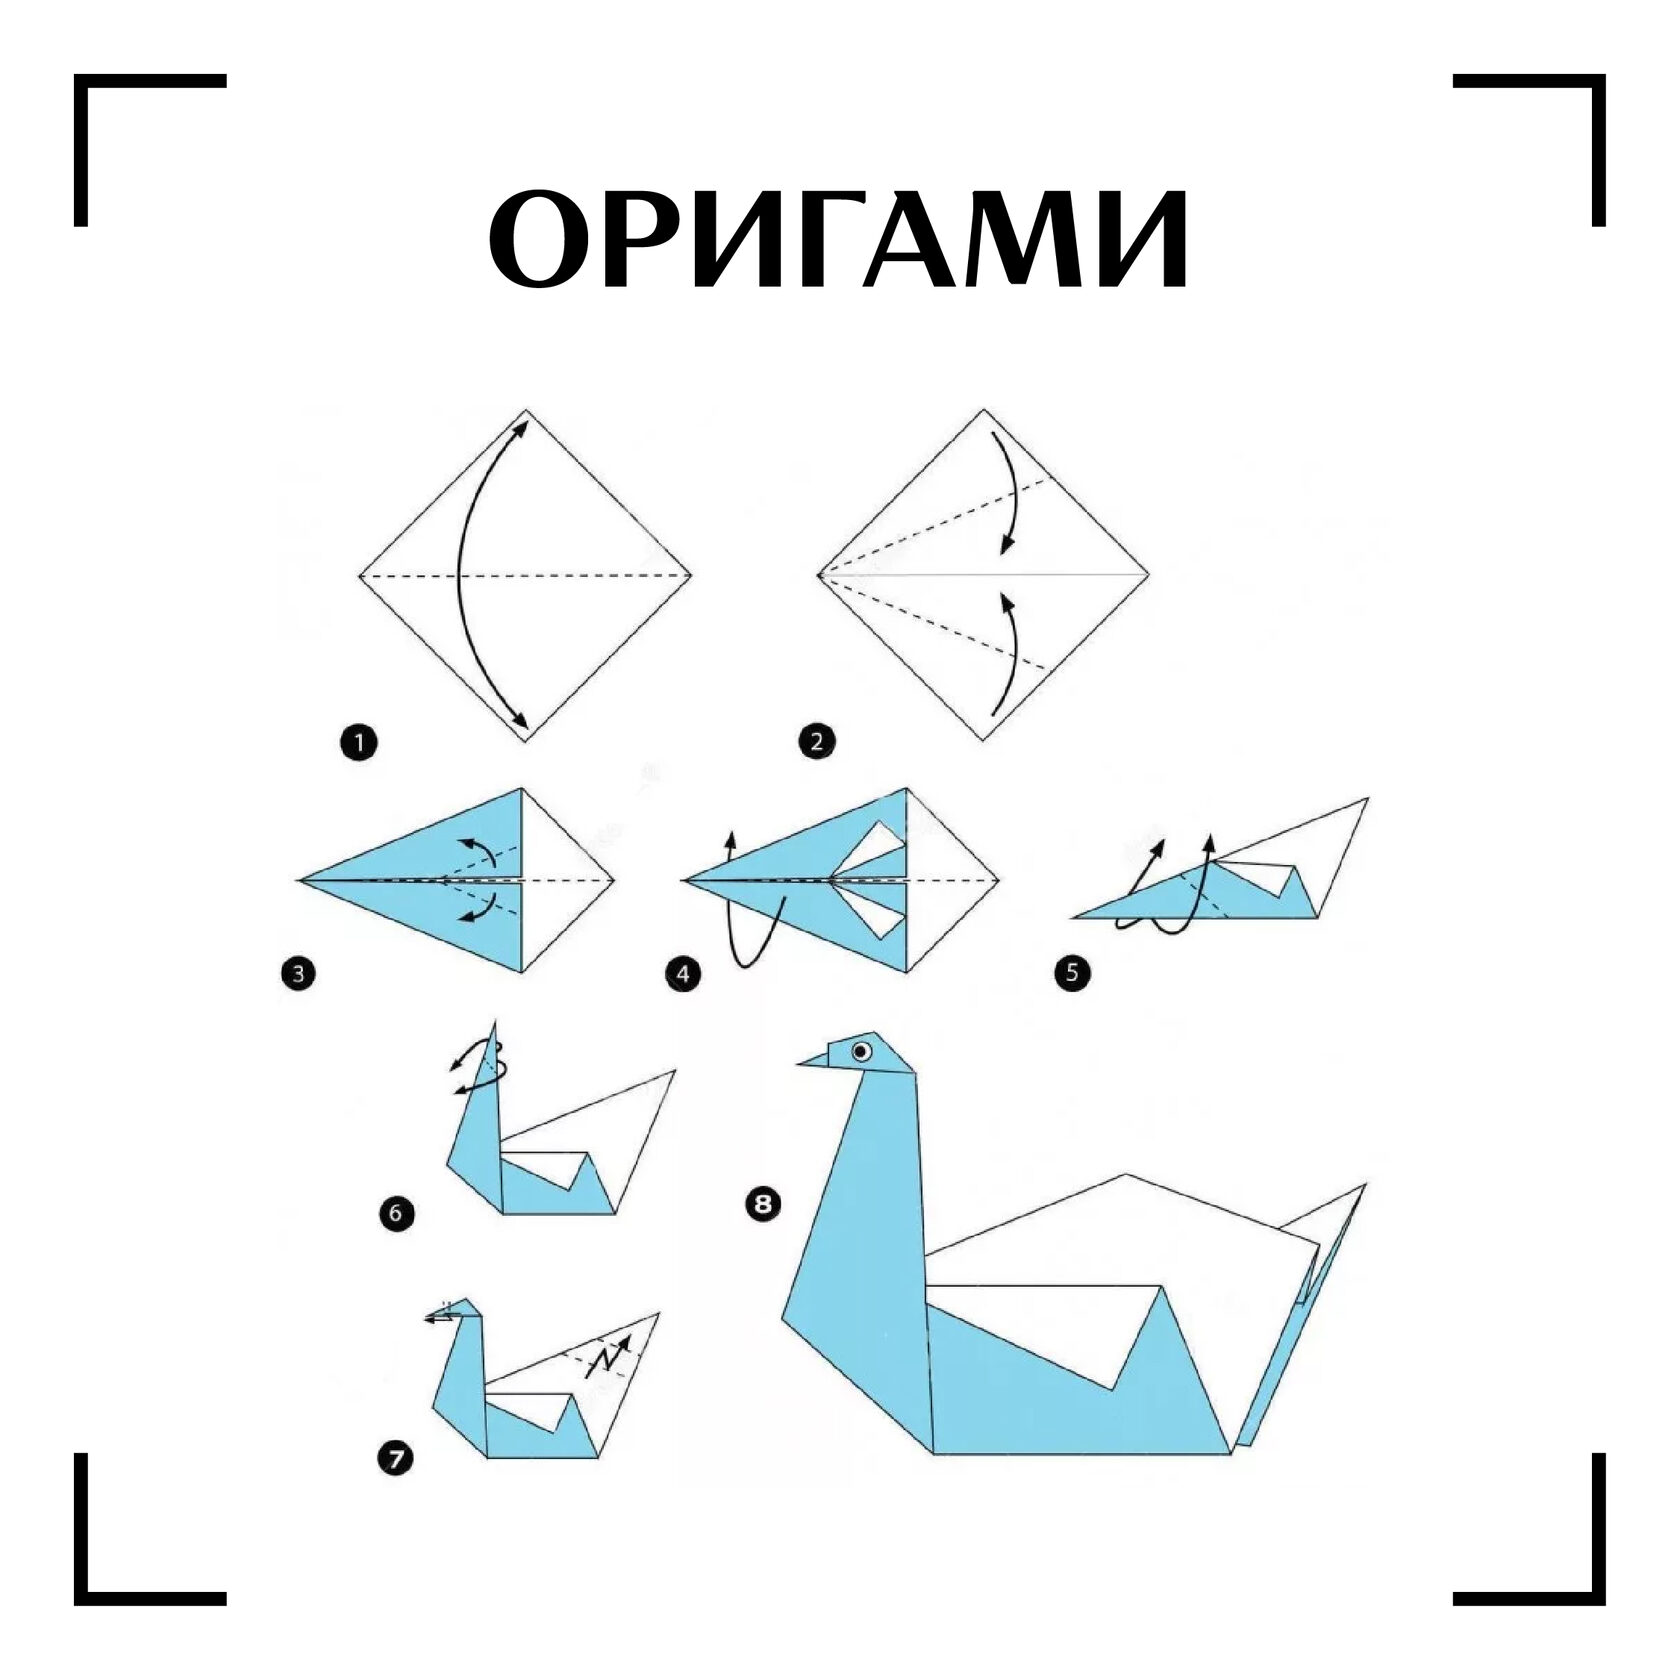 Сделать птичку из бумаги своими руками. Оригами лебедь схема. Оригами птичка схема лебедь. Как сделать лебедя из бумаги пошагово. Оригами лебедь пошагово для детей.